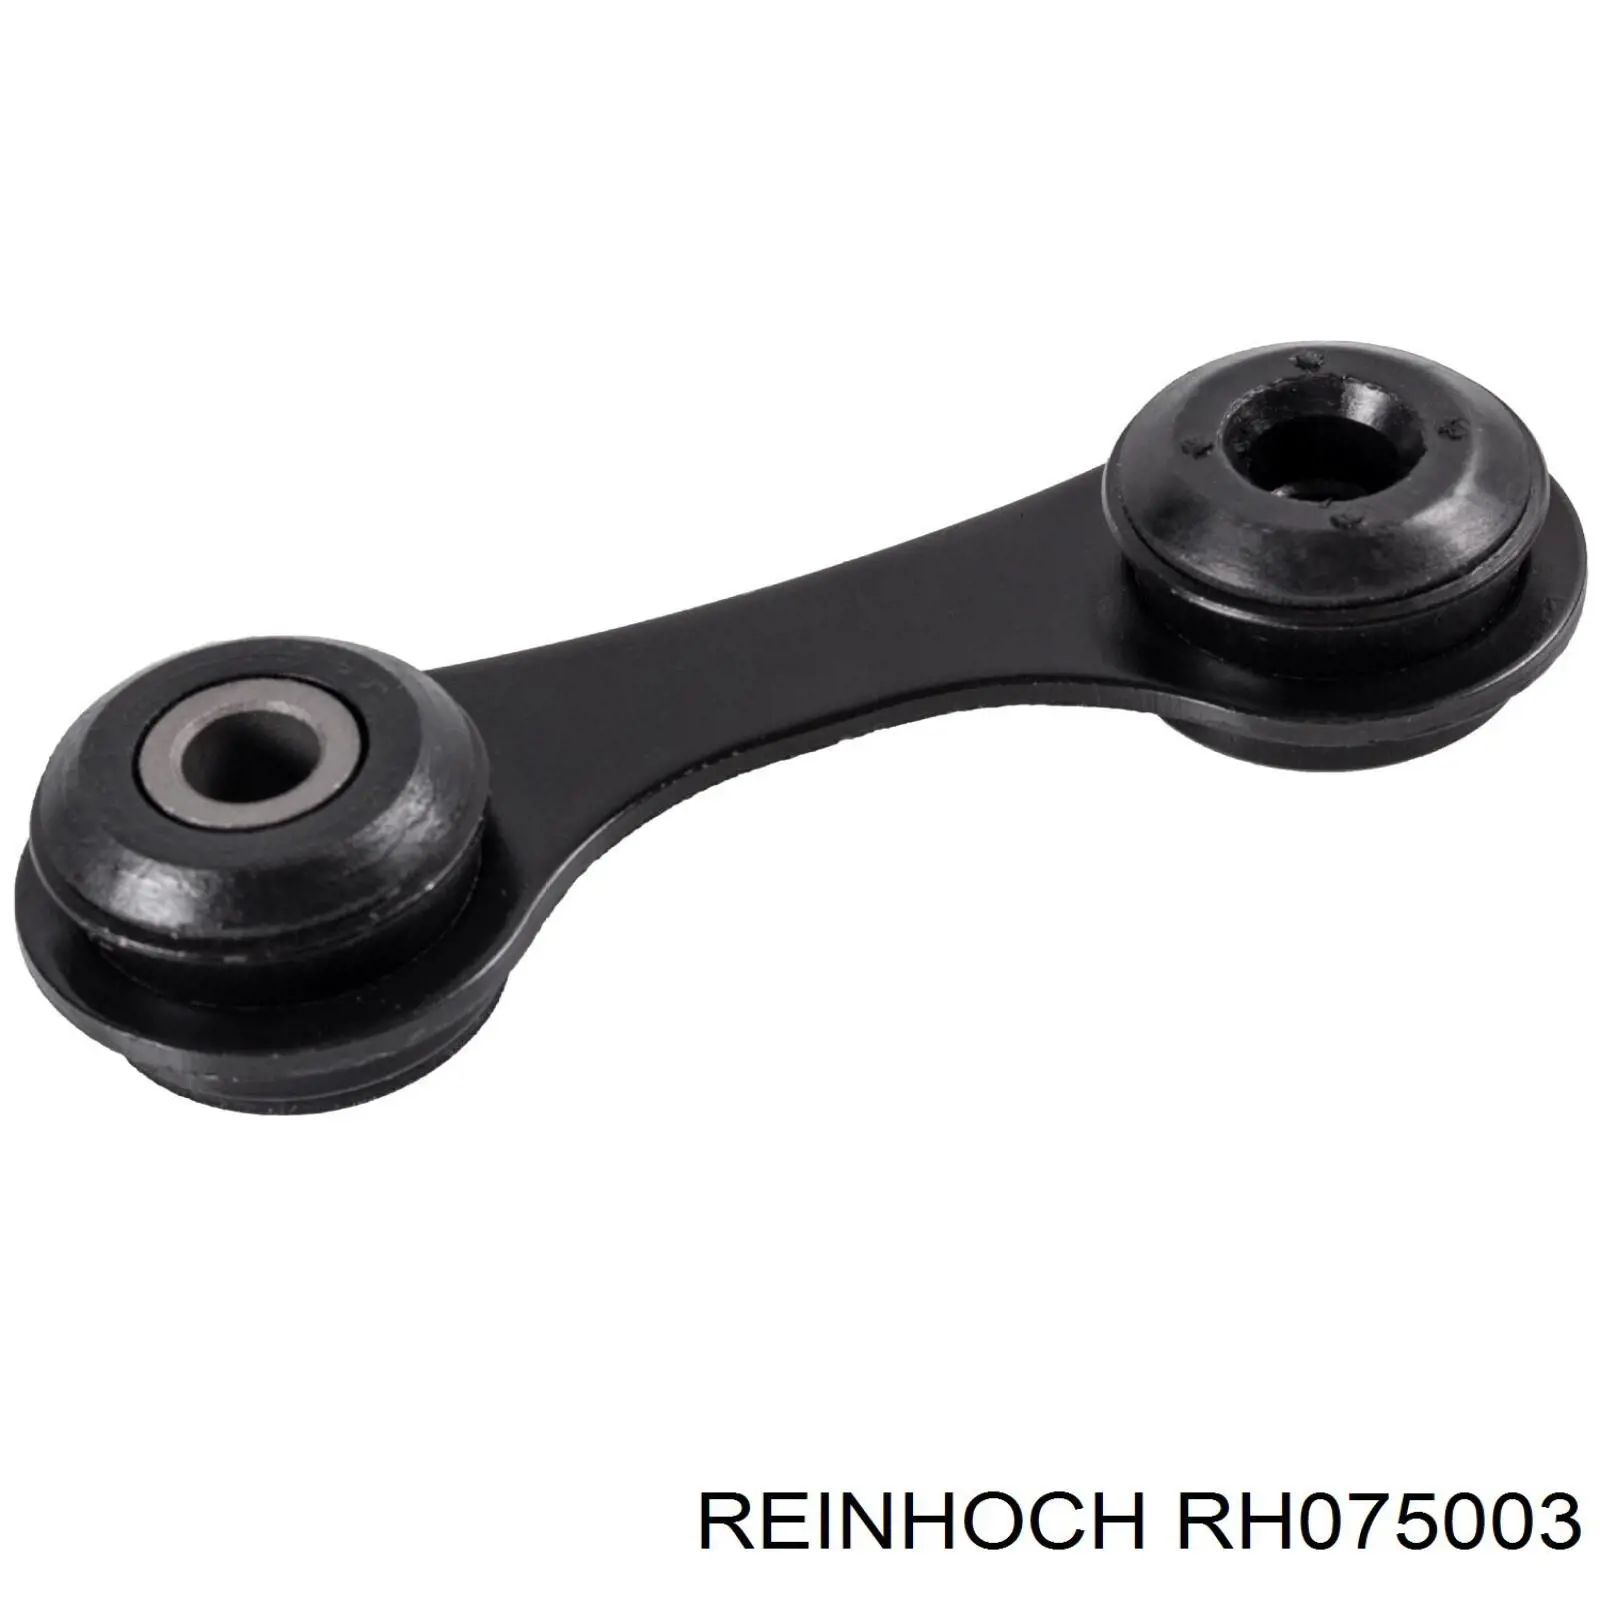 RH075003 Reinhoch soporte de barra estabilizadora trasera